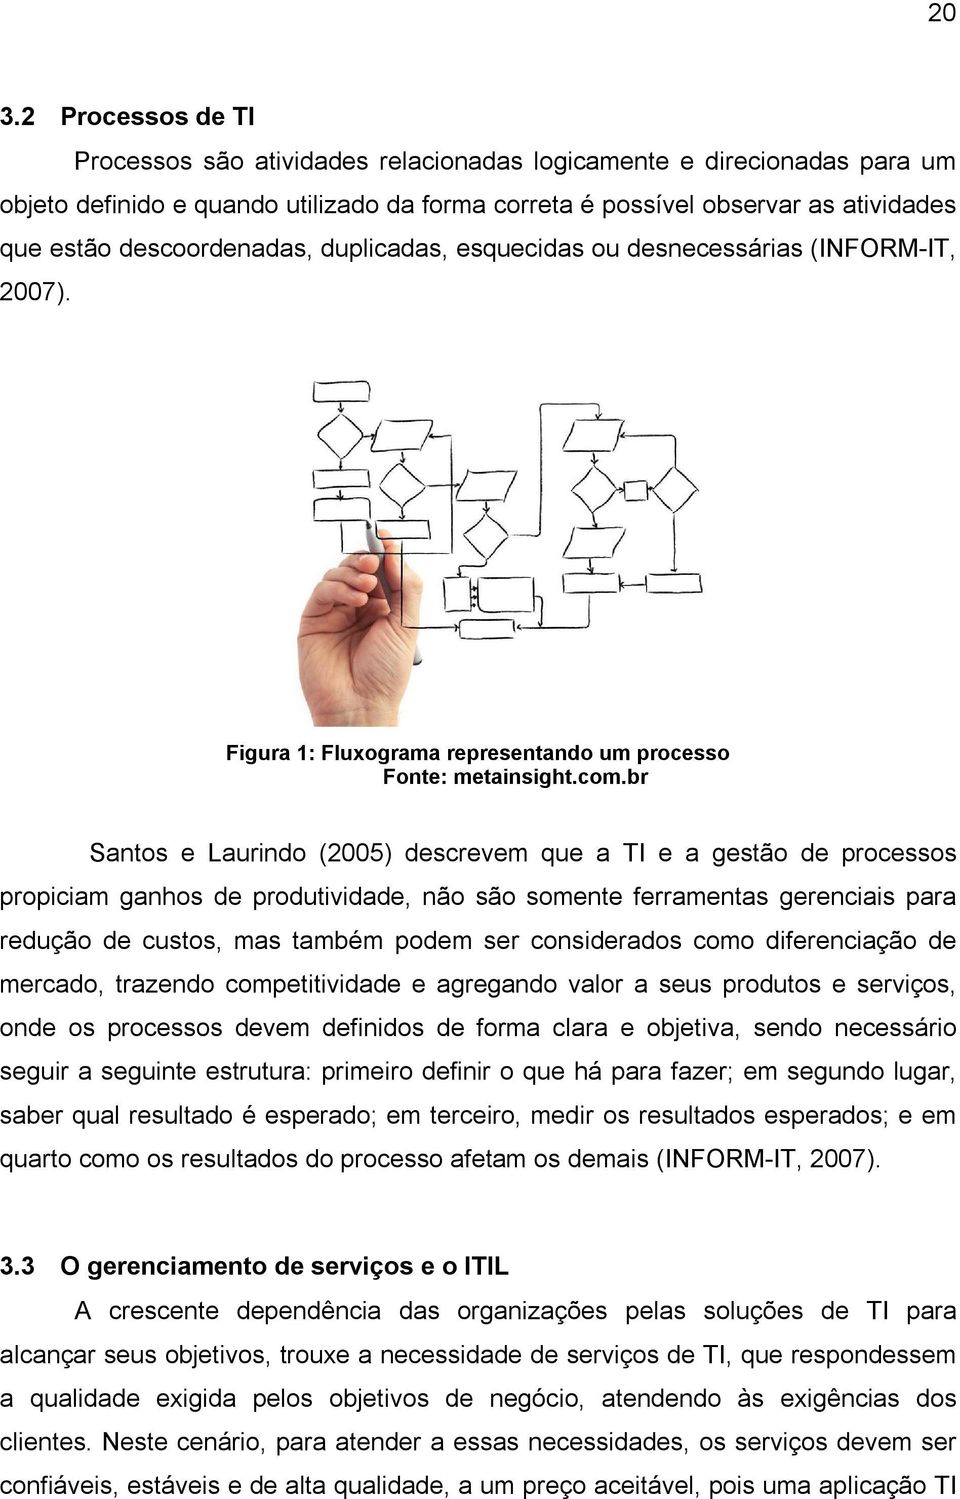 br Santos e Laurindo (2005) descrevem que a TI e a gestão de processos propiciam ganhos de produtividade, não são somente ferramentas gerenciais para redução de custos, mas também podem ser